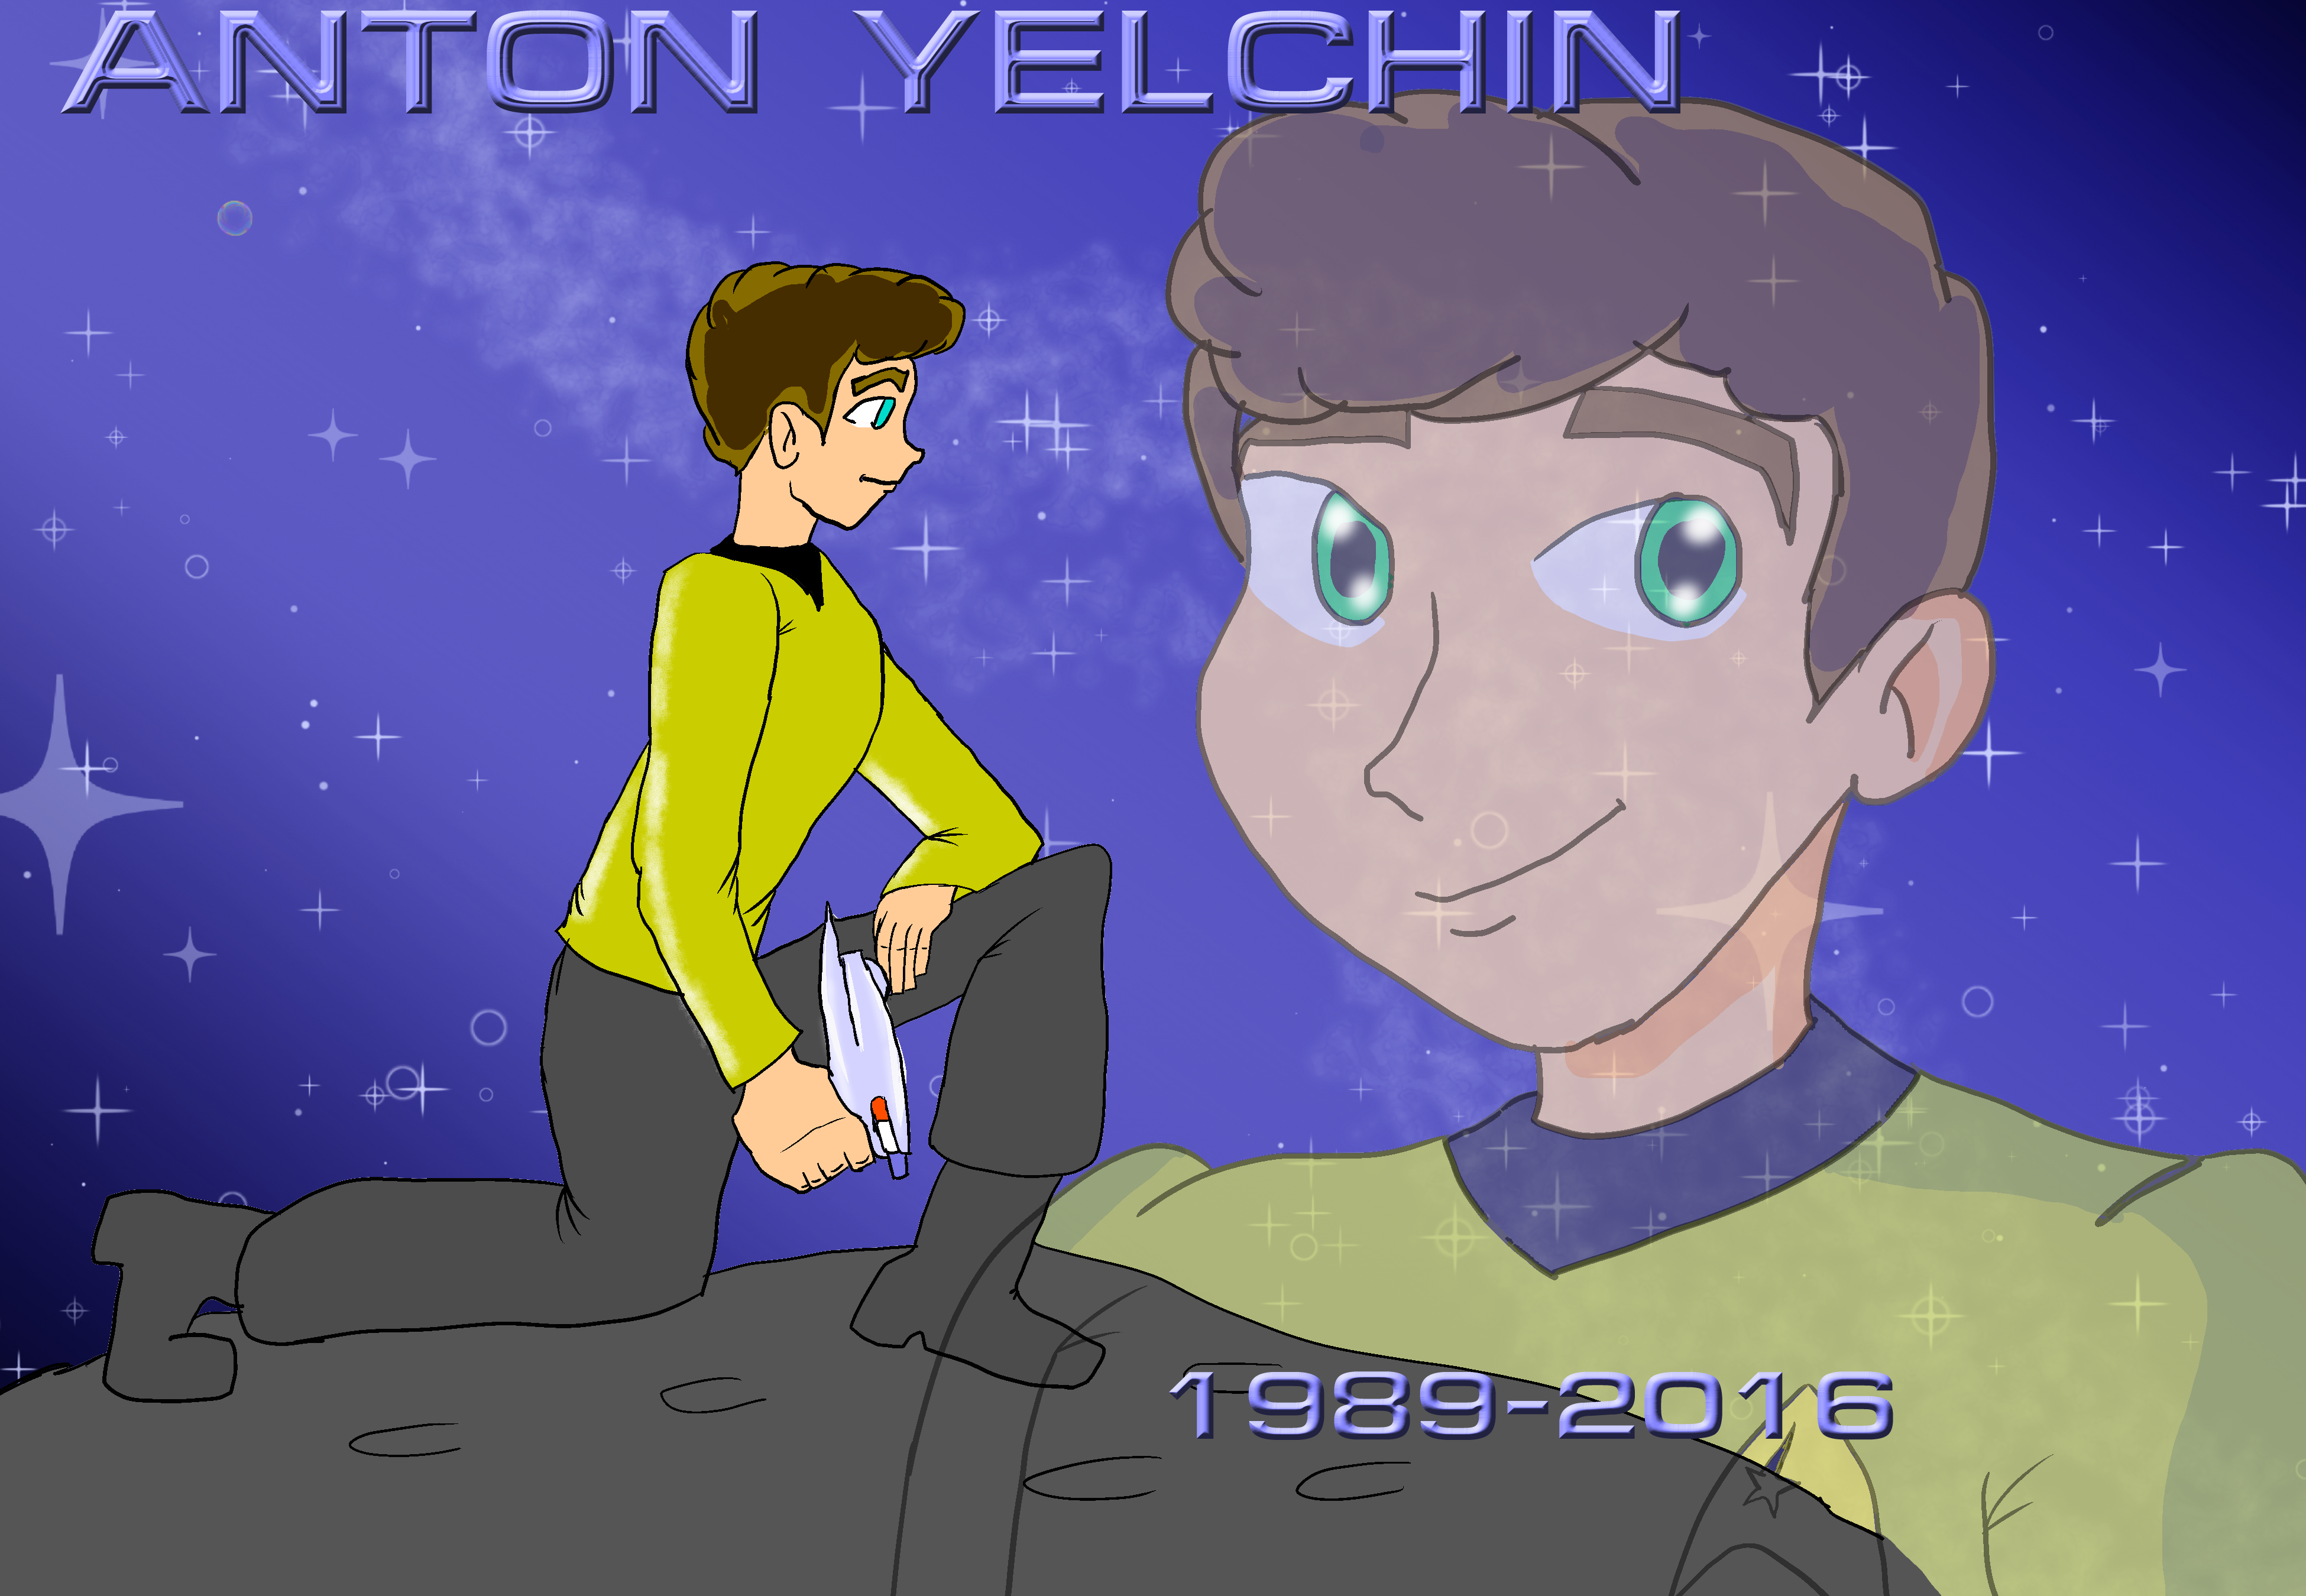 My Tribute to Anton Yelchin by KiteBoy1